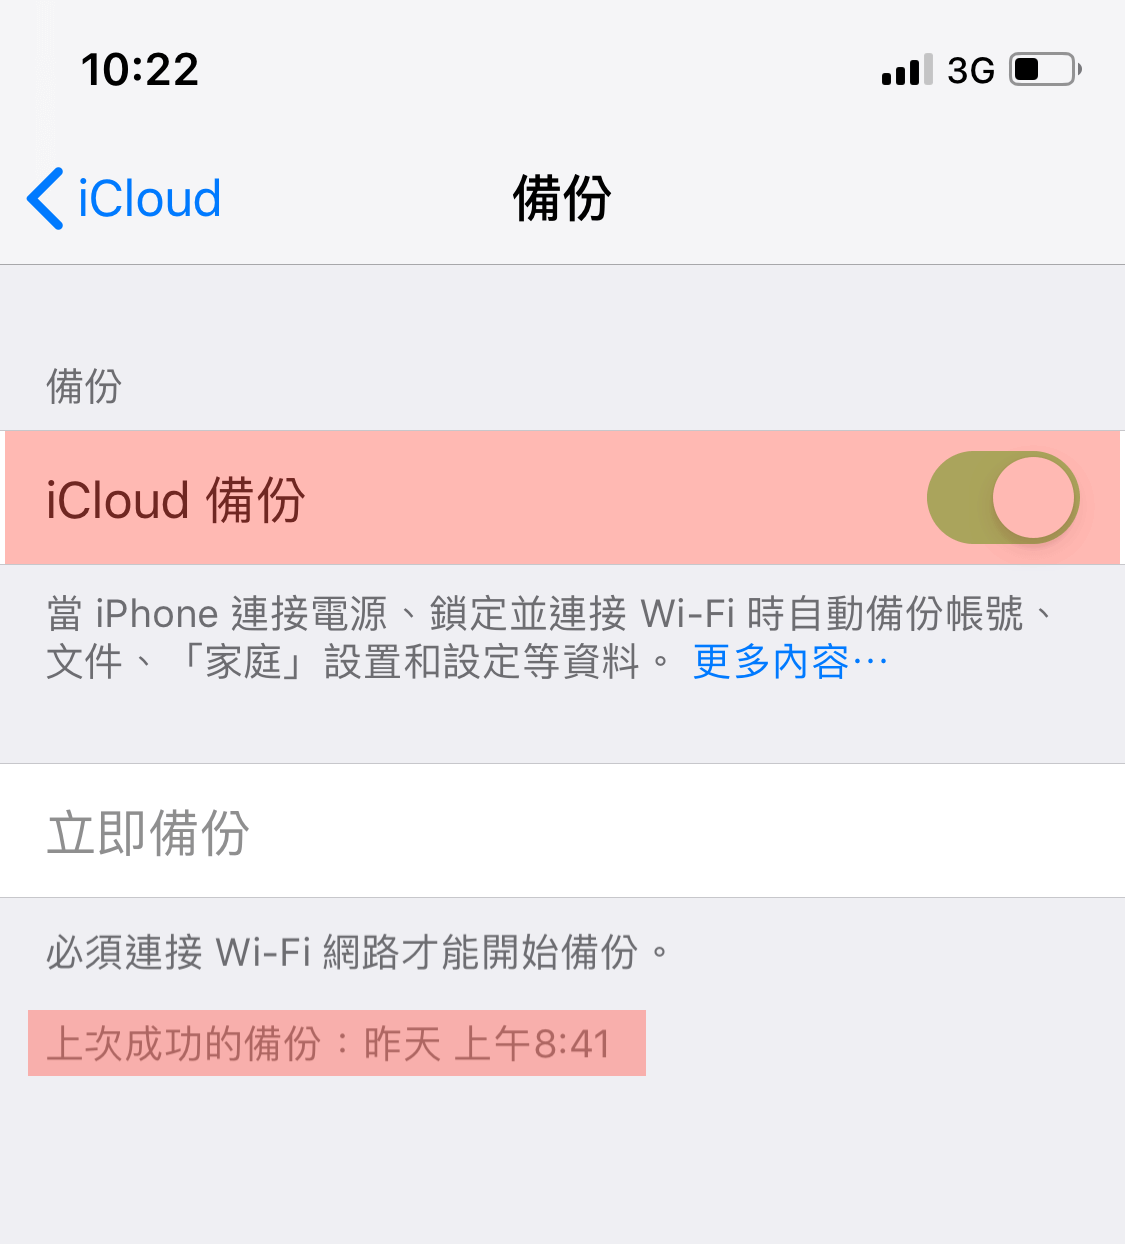 iOS 14.4 正式版9大亮點整理、災情耗電總整理